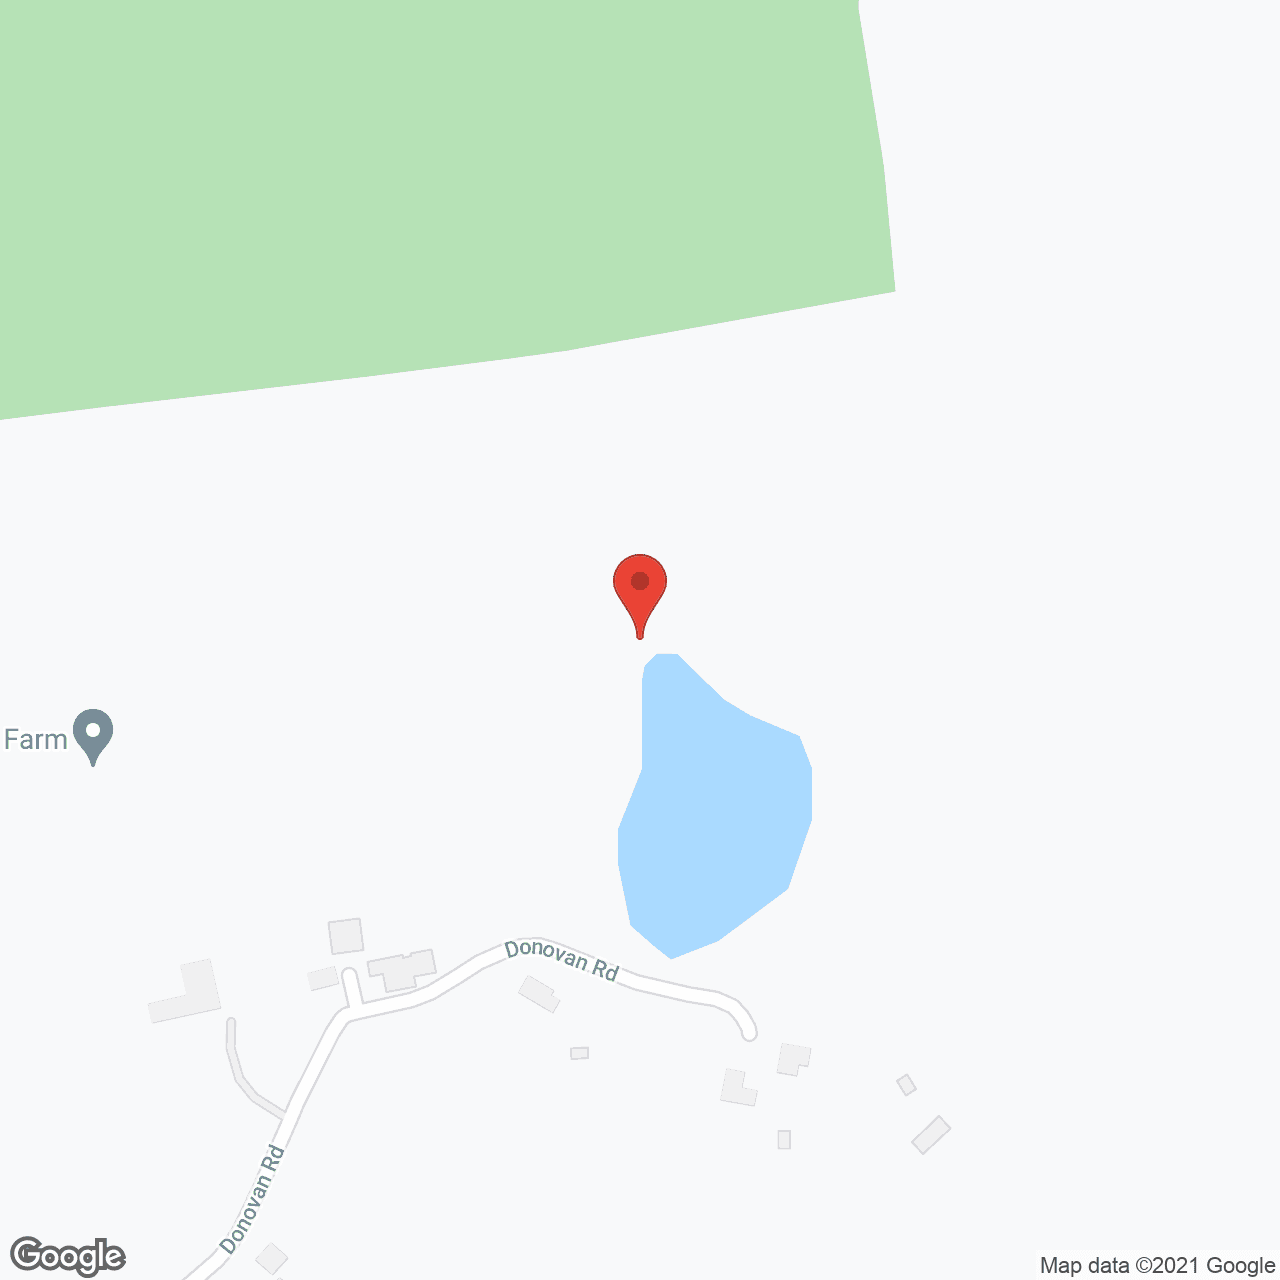 Robin Hill Farm in google map